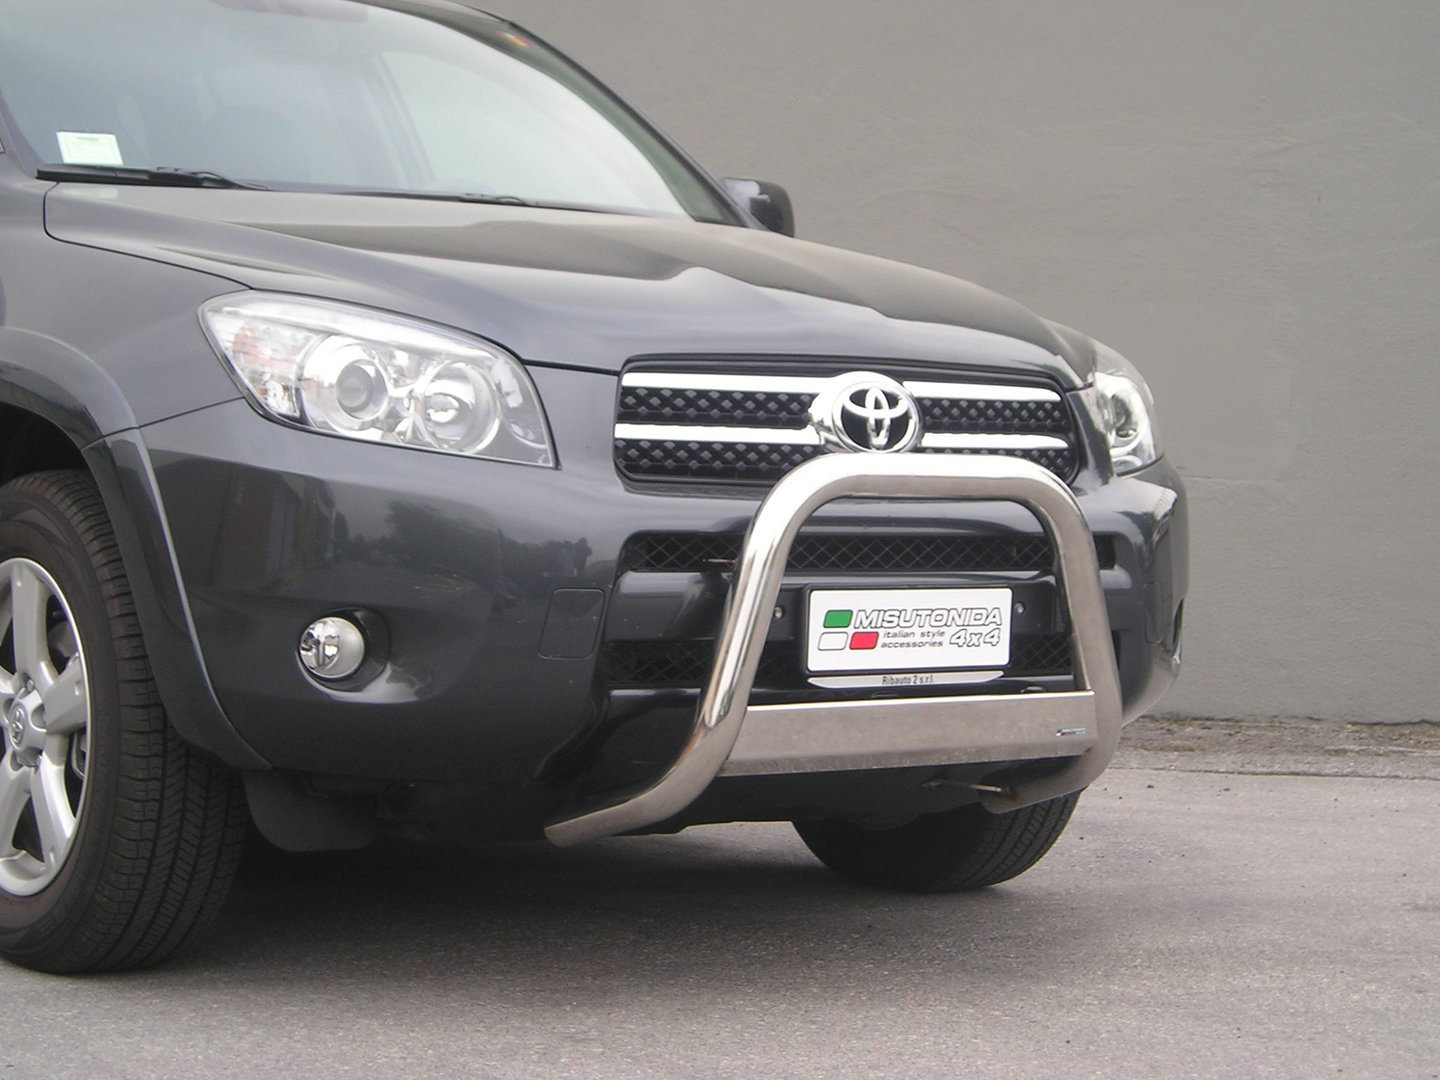 Toyota RAV4 EU - Valorauta 2006-2009 (Misutonida)